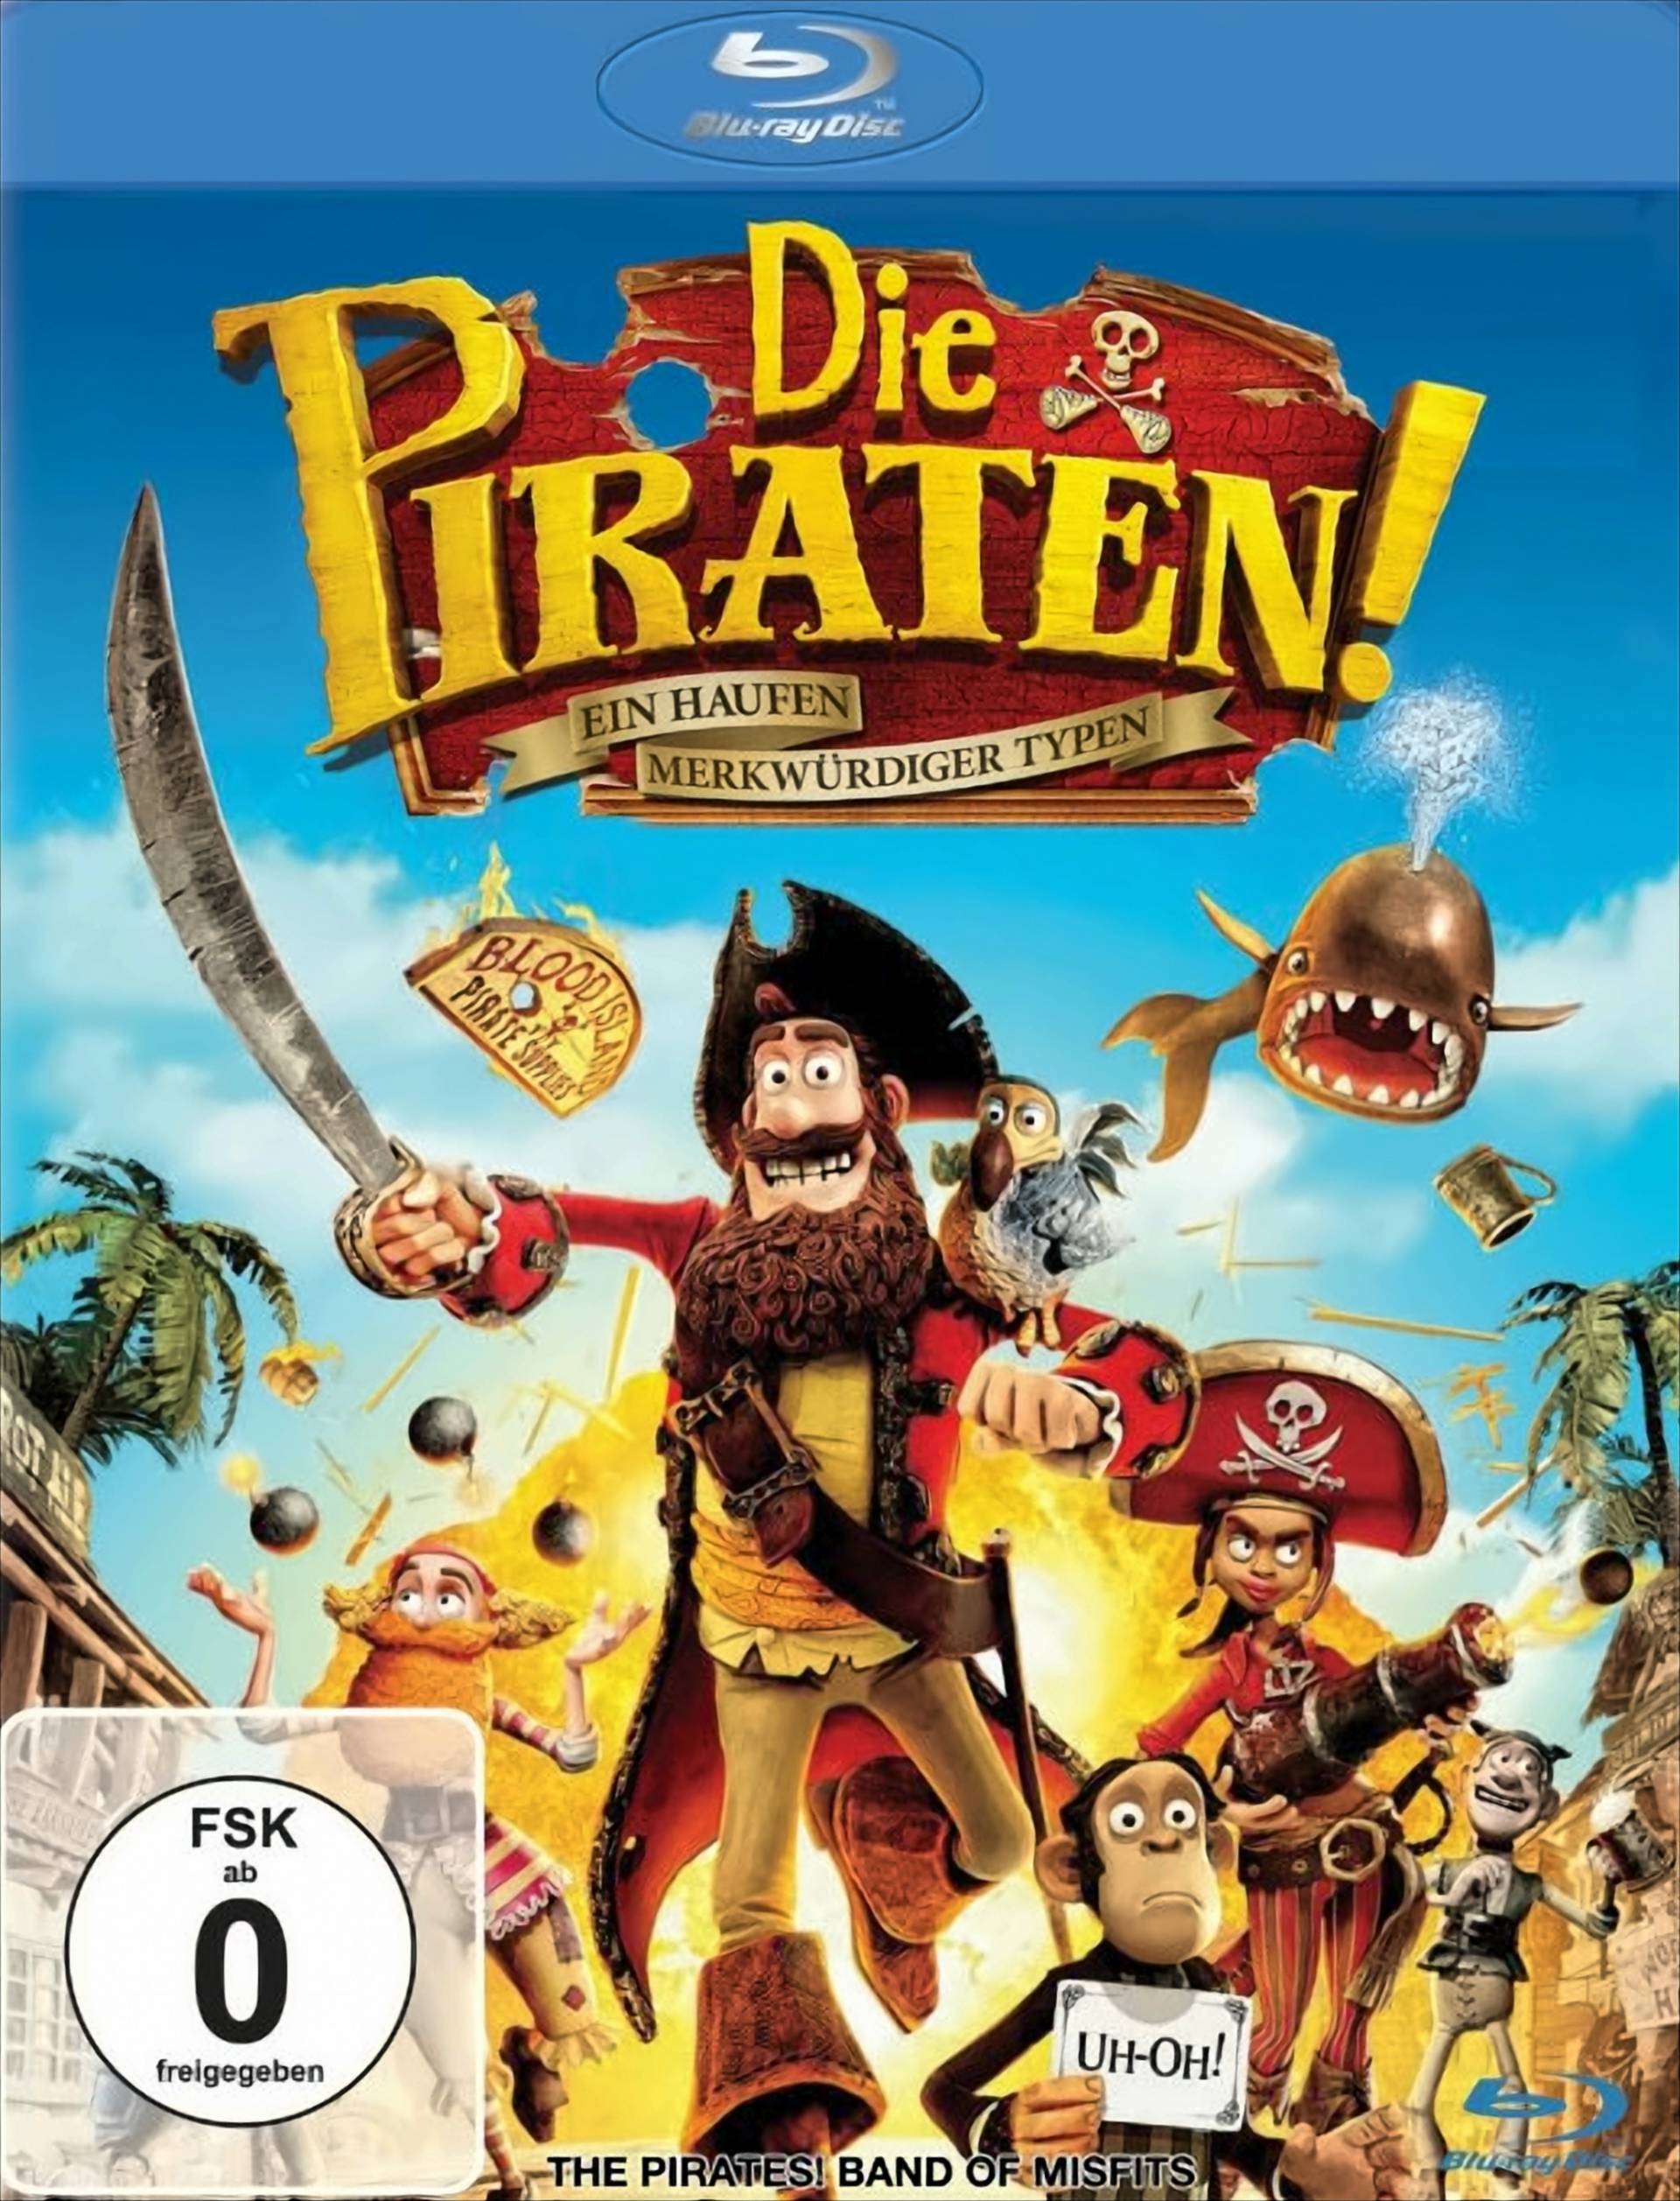 Die Piraten! - Ein Haufen merkwürdiger Typen von Sony Pictures